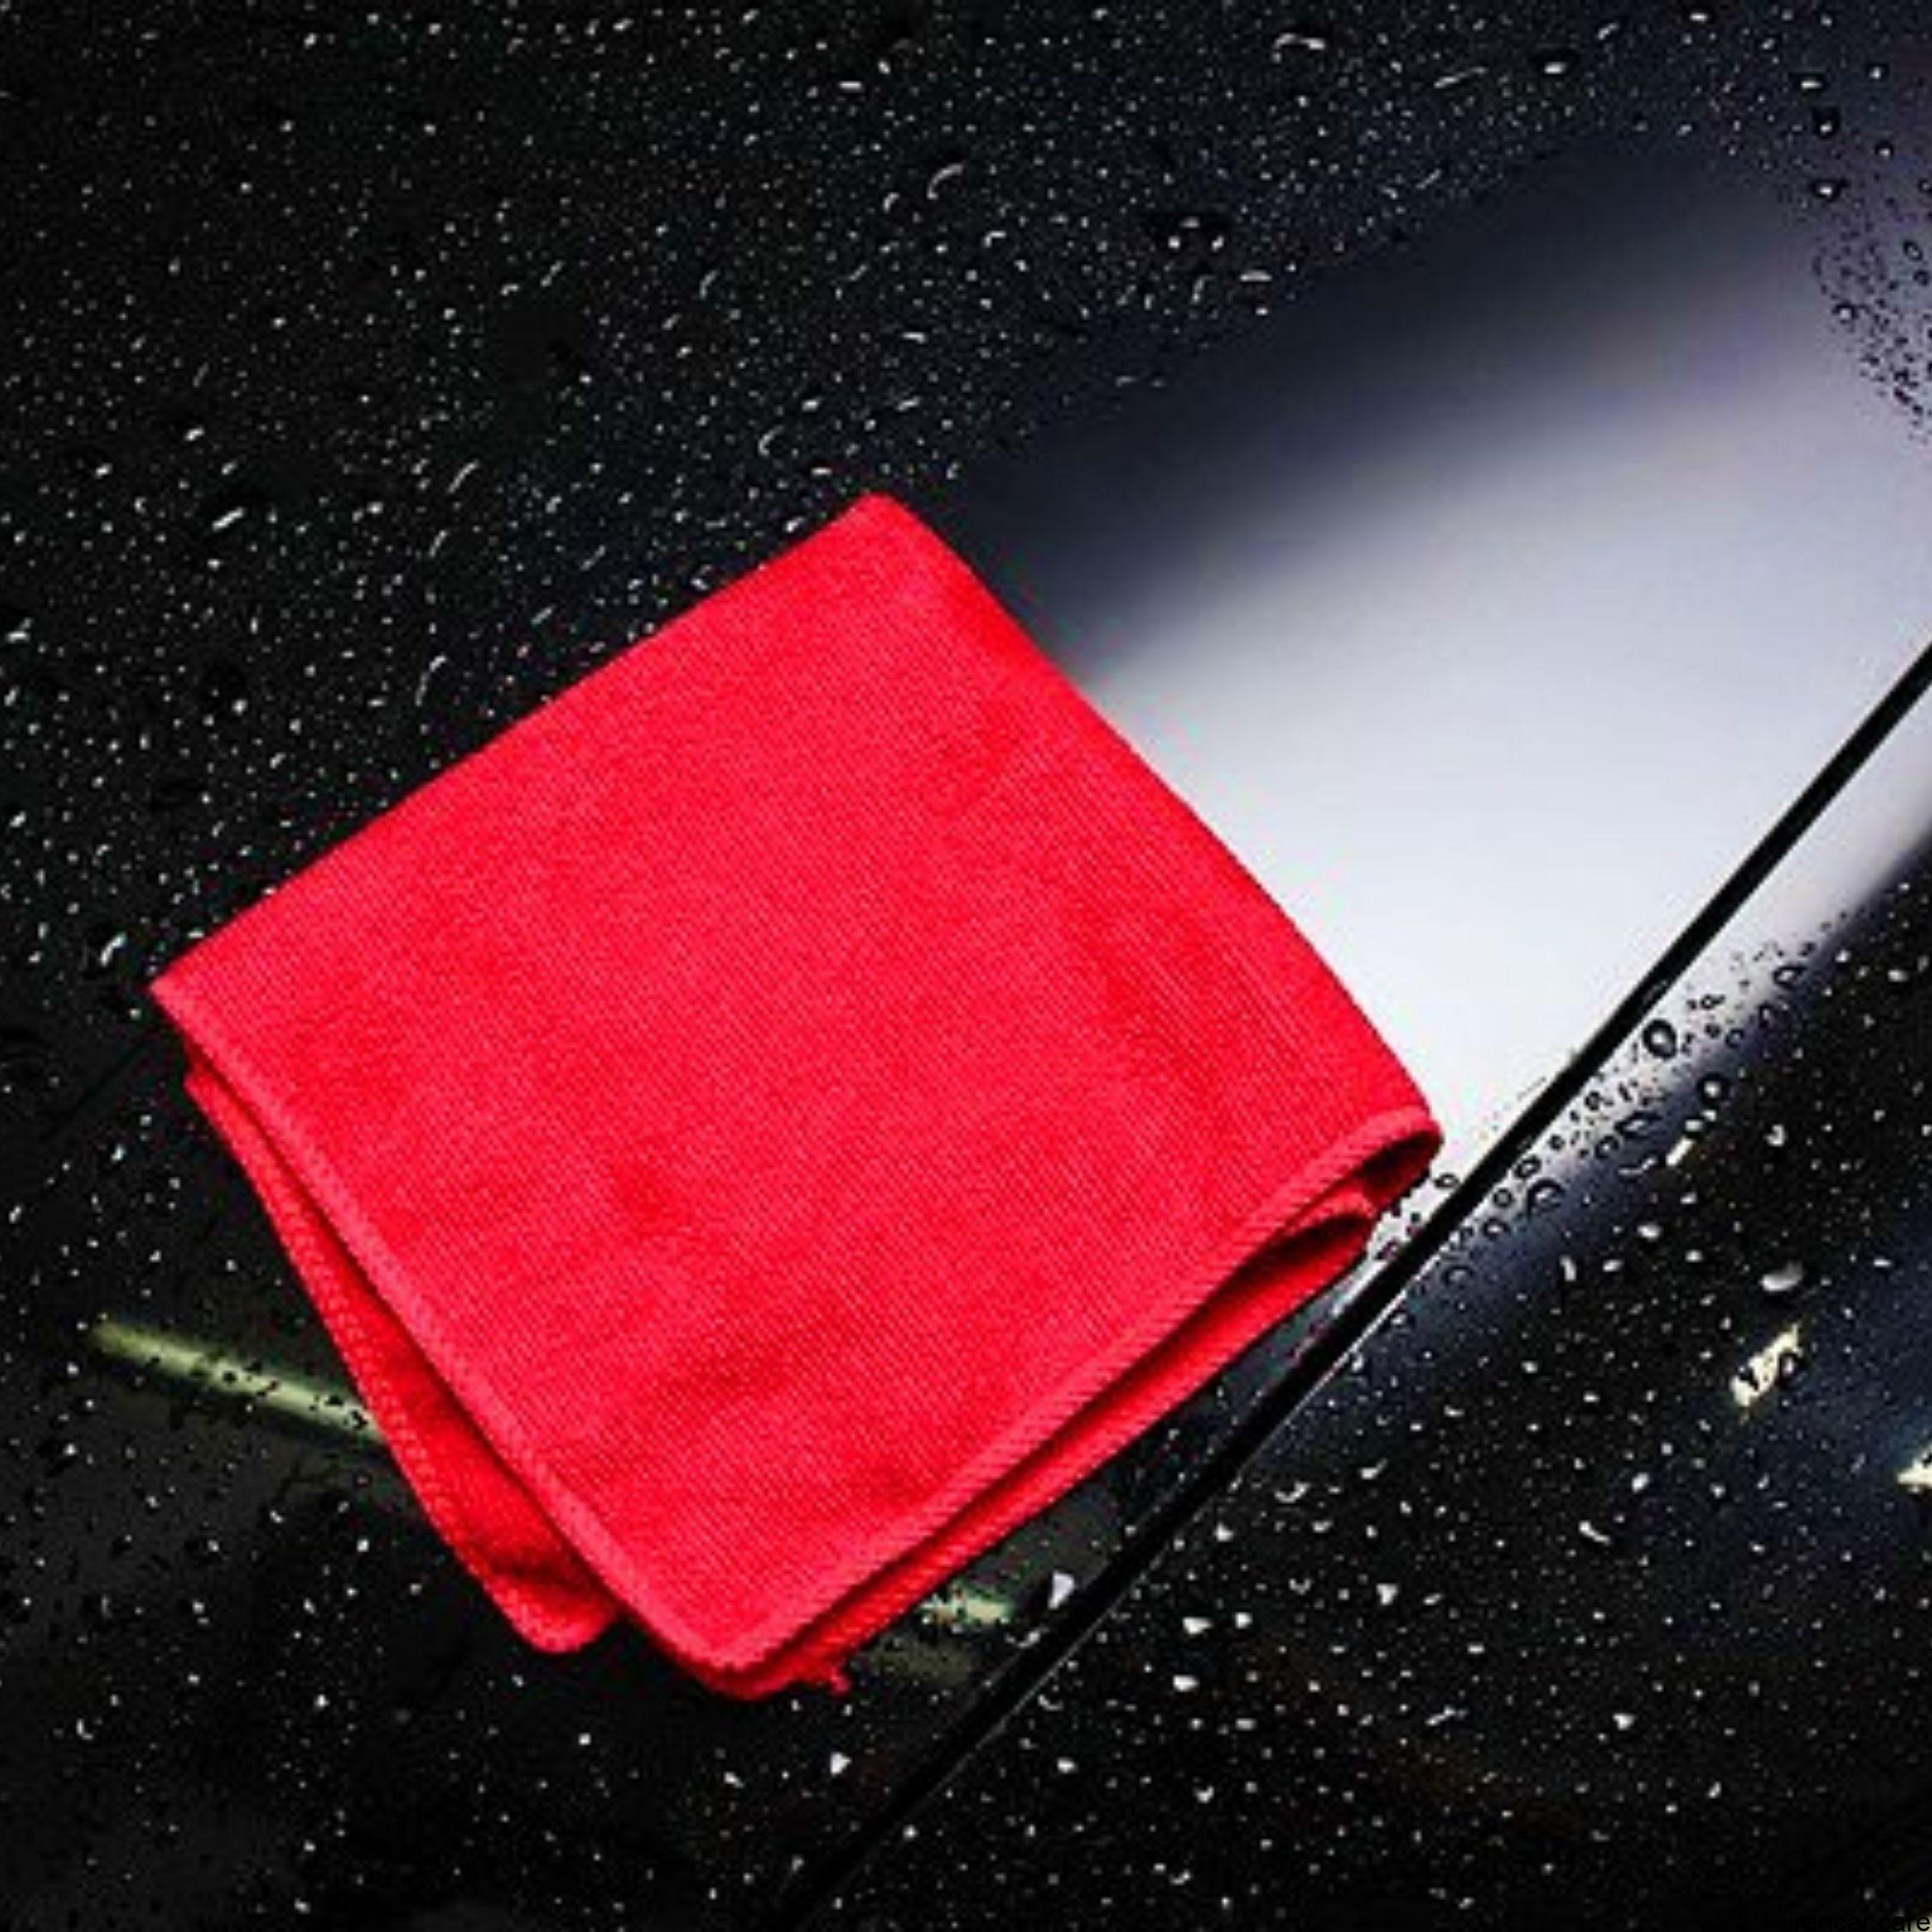 کدام روش برای خشک کردن ماشین شما مناسب است؟